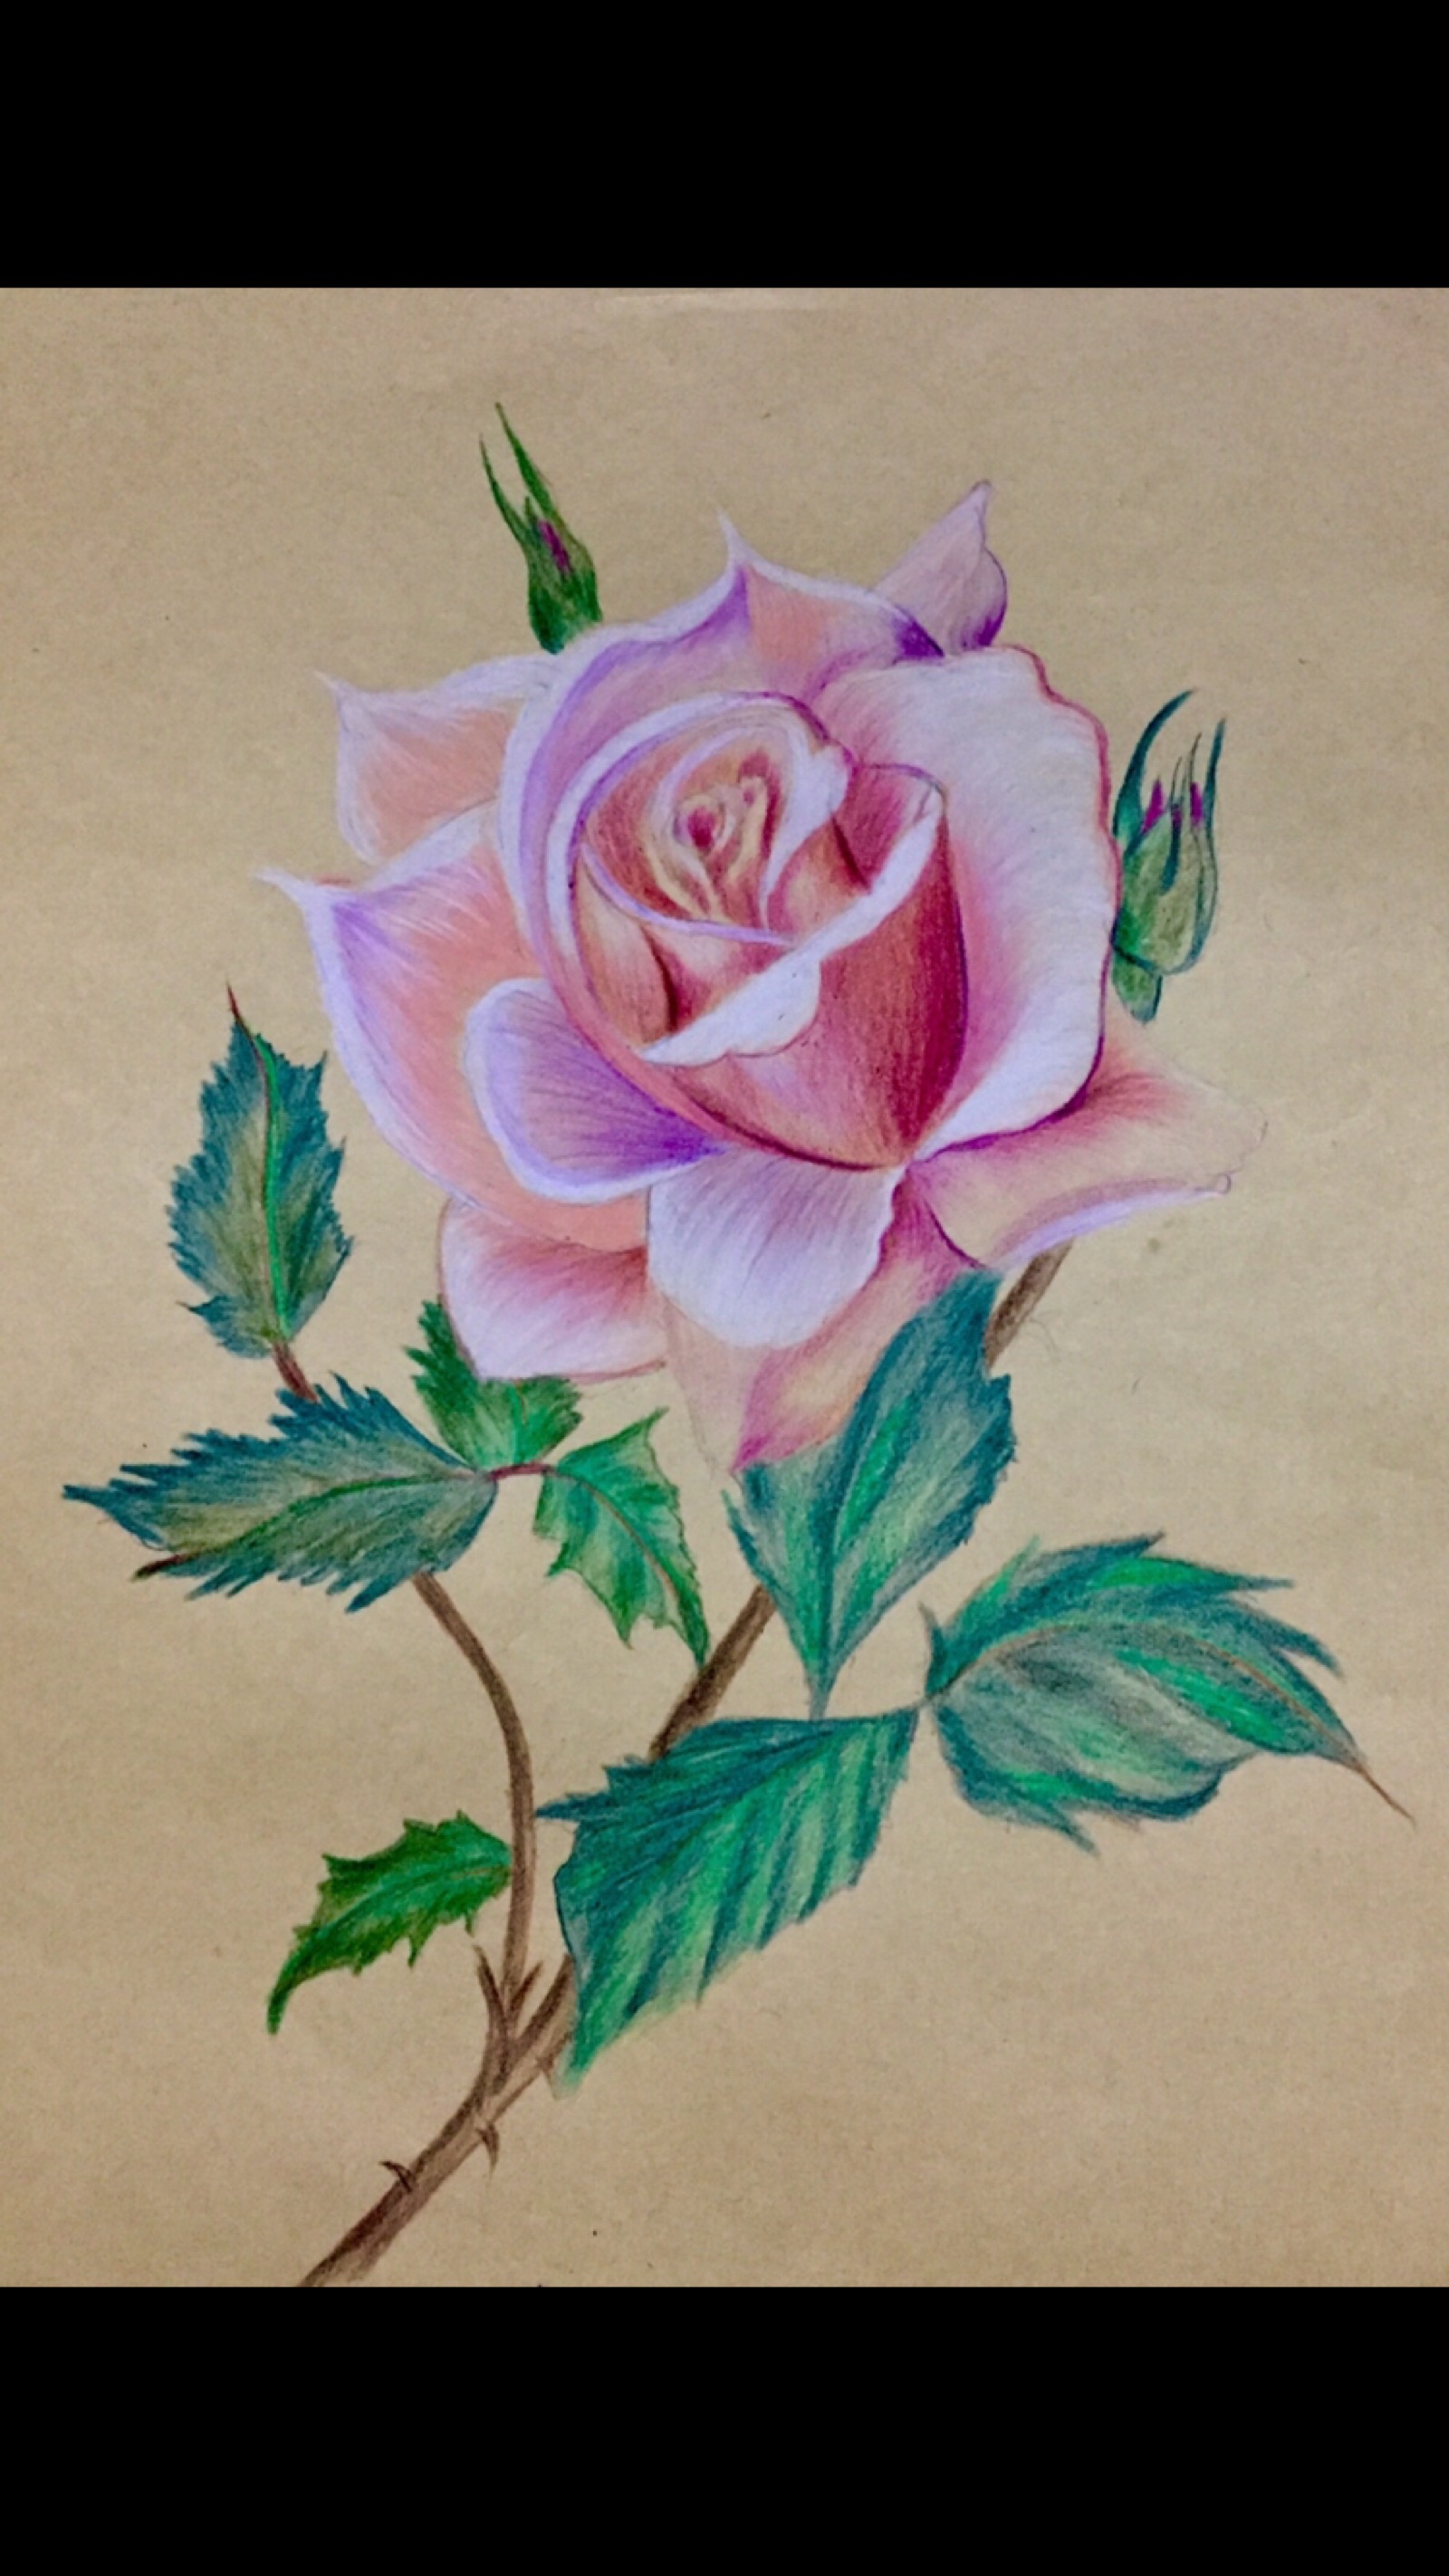 国画大师玫瑰花的画法图片